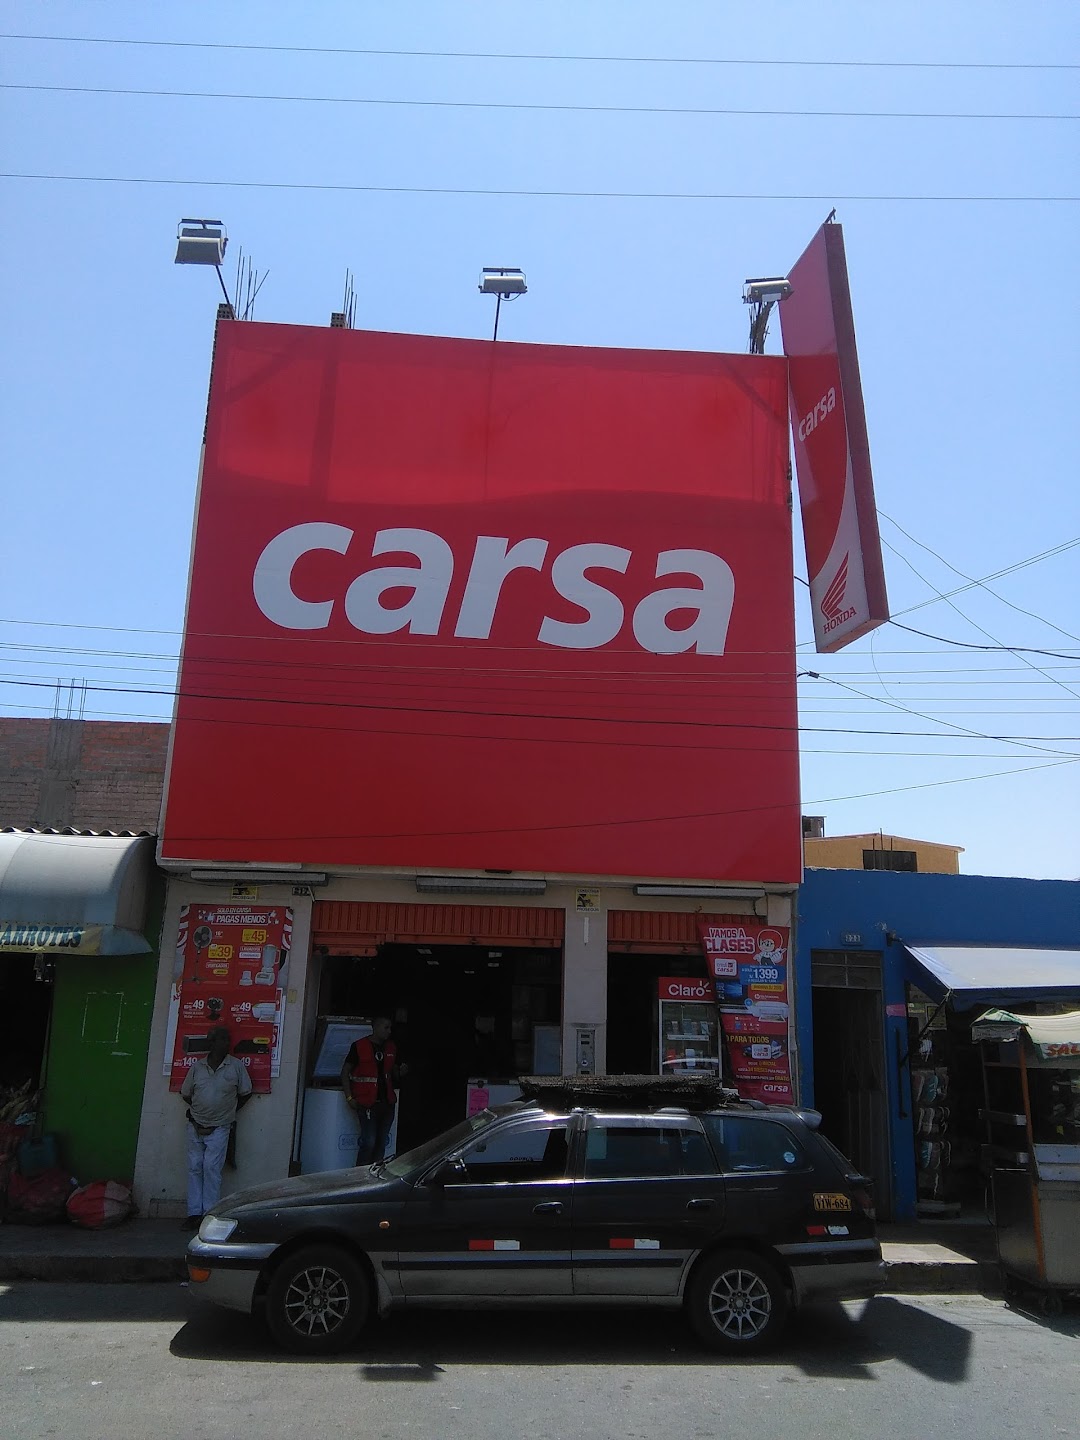 Carsa - Camana